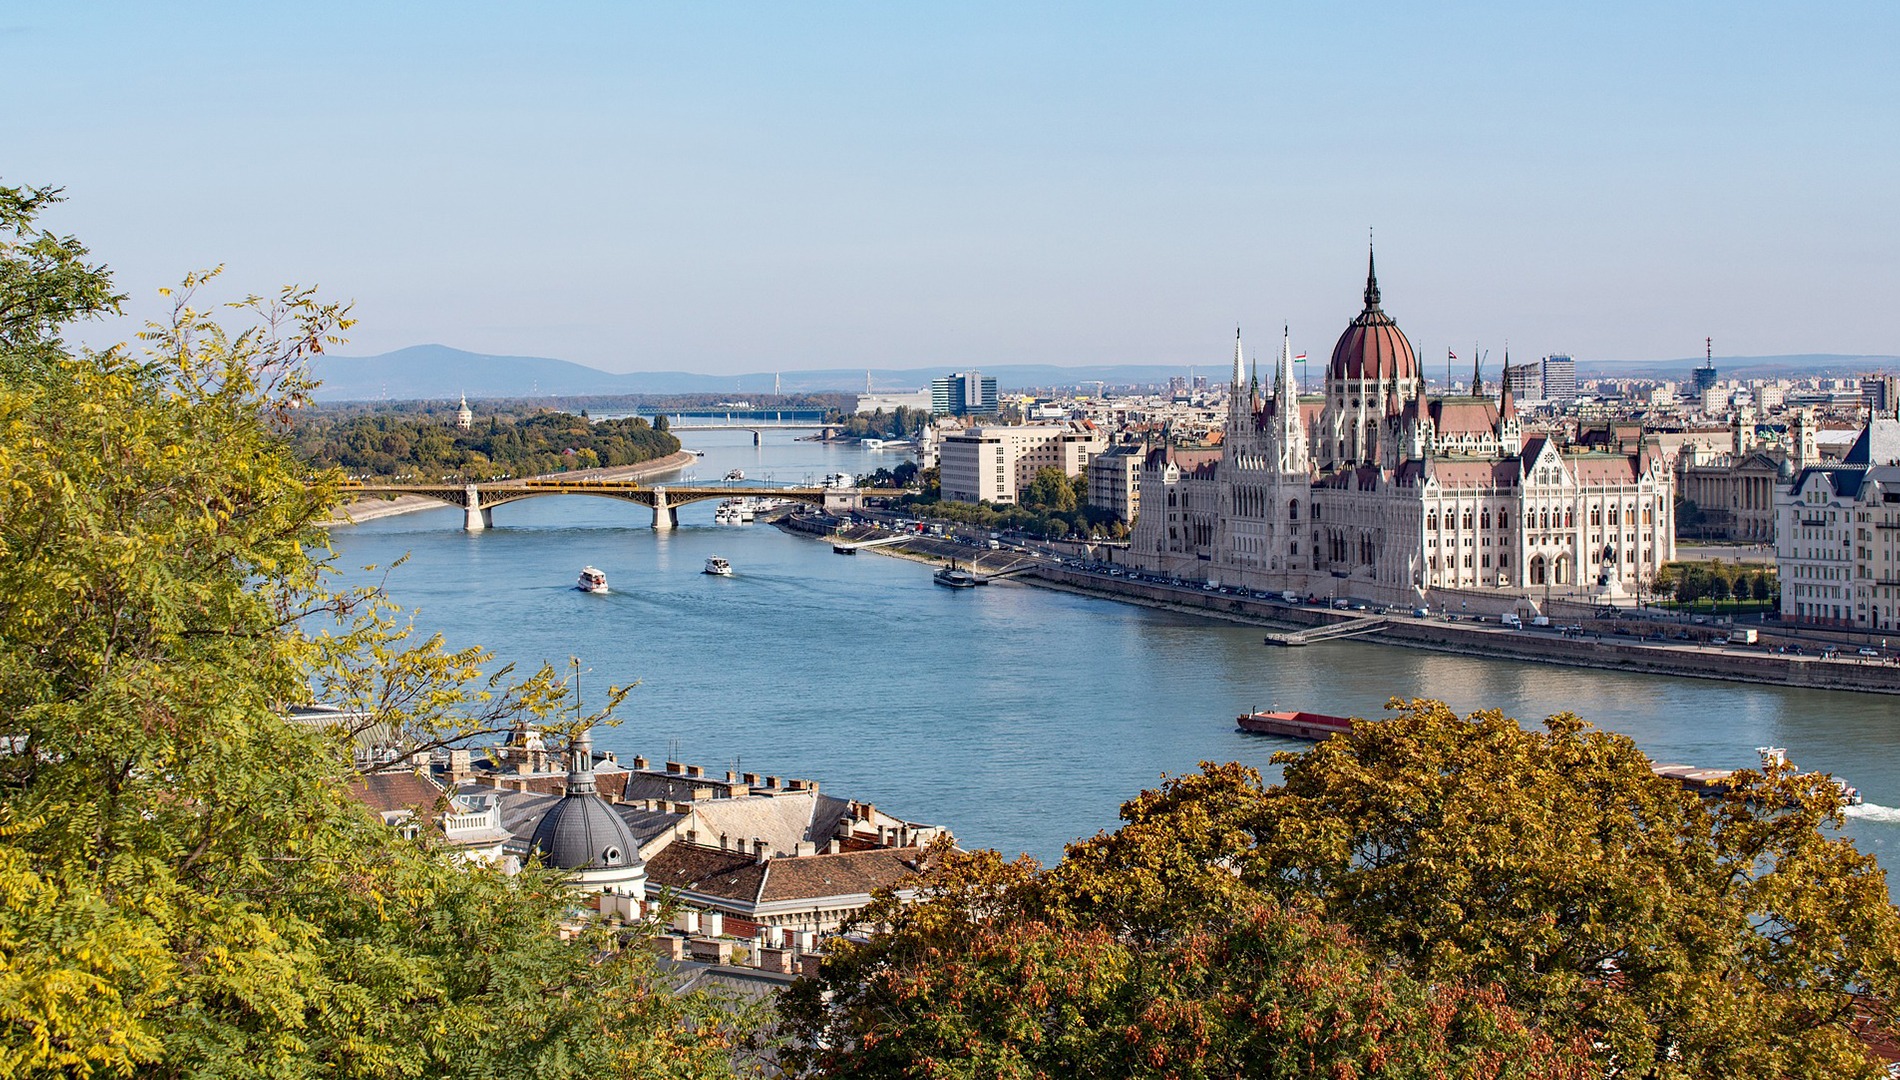 Auswandern nach Ungarn - Budapest